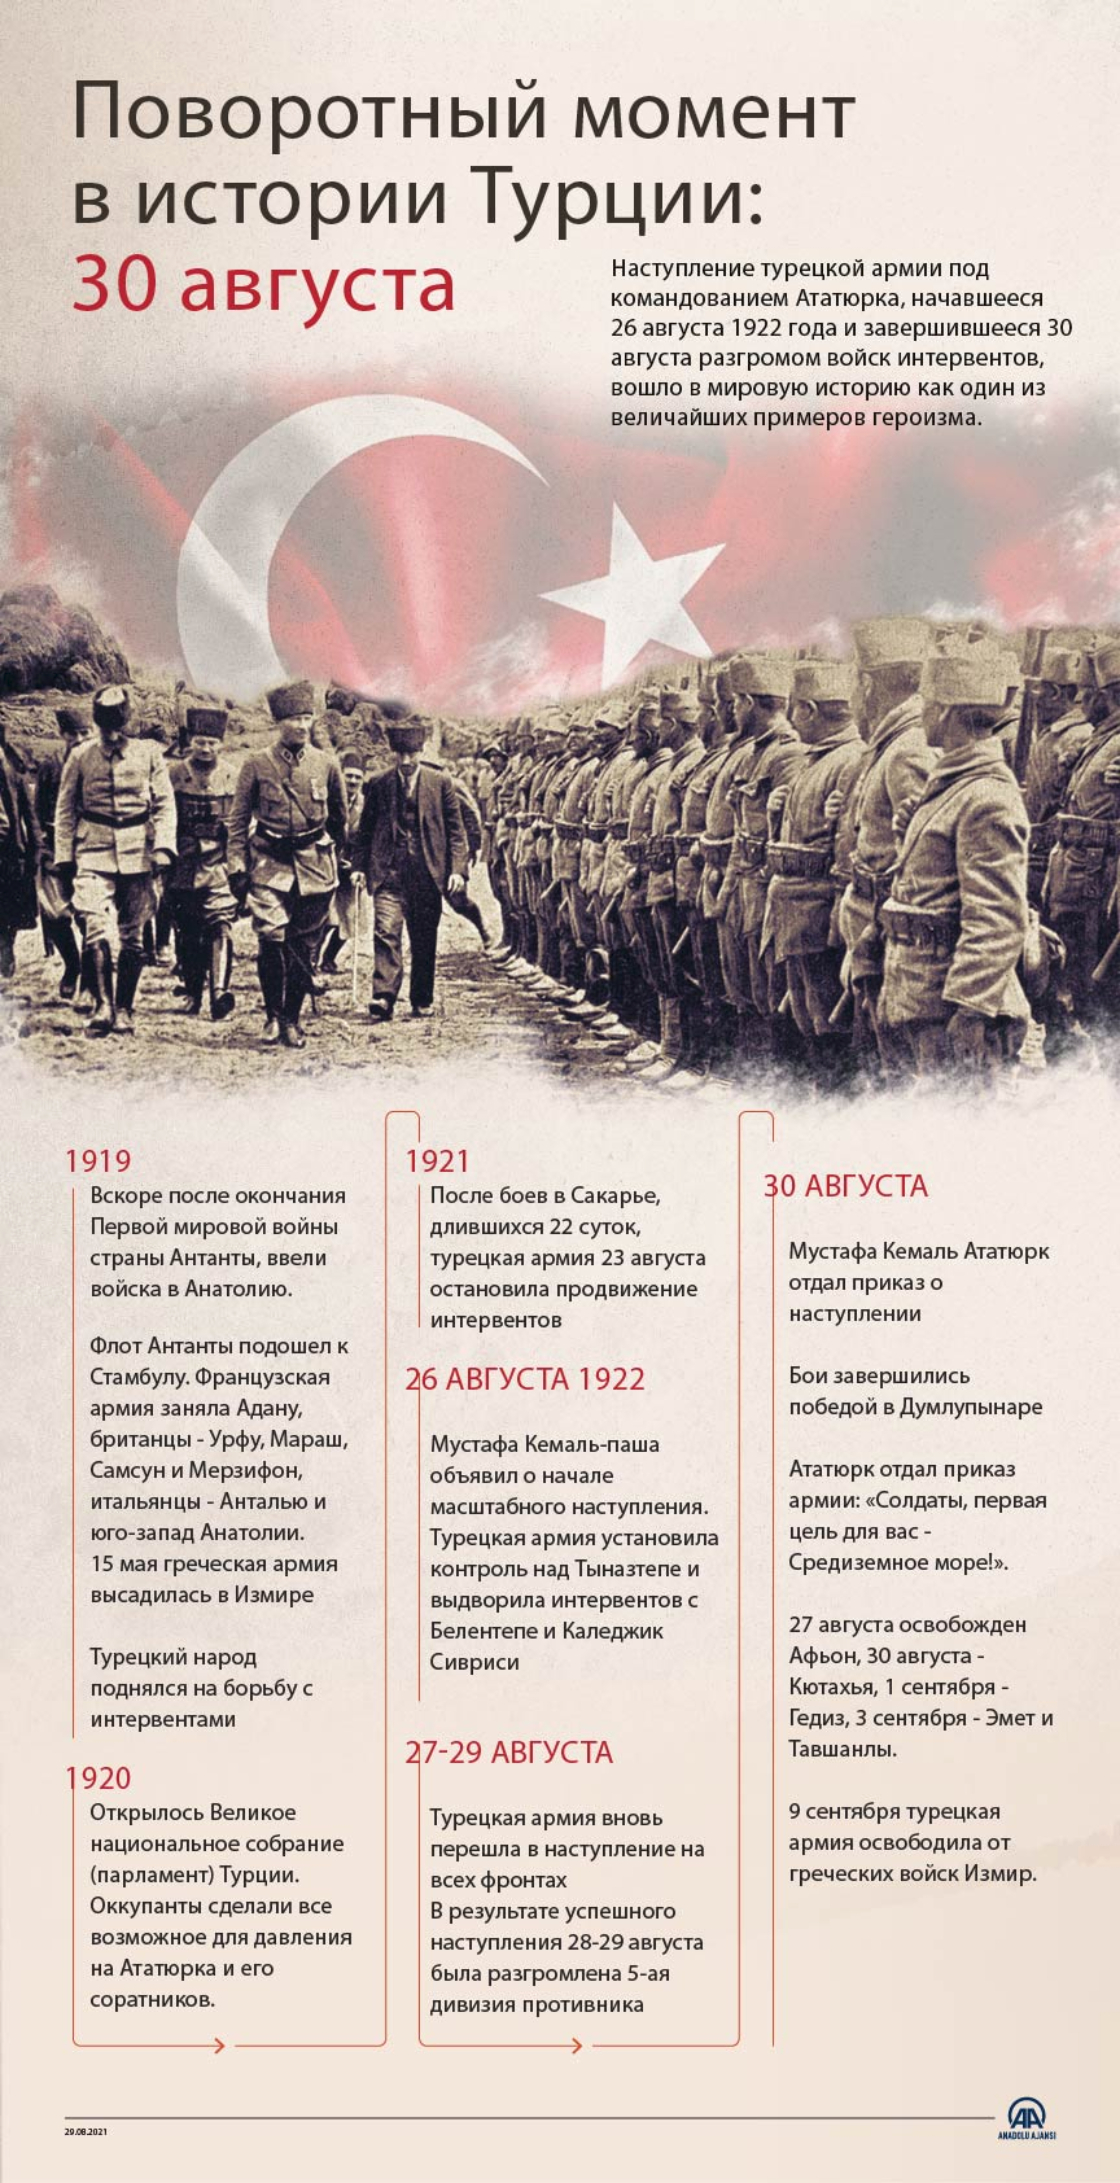 Победа 30 августа: поворотный момент в истории Турции